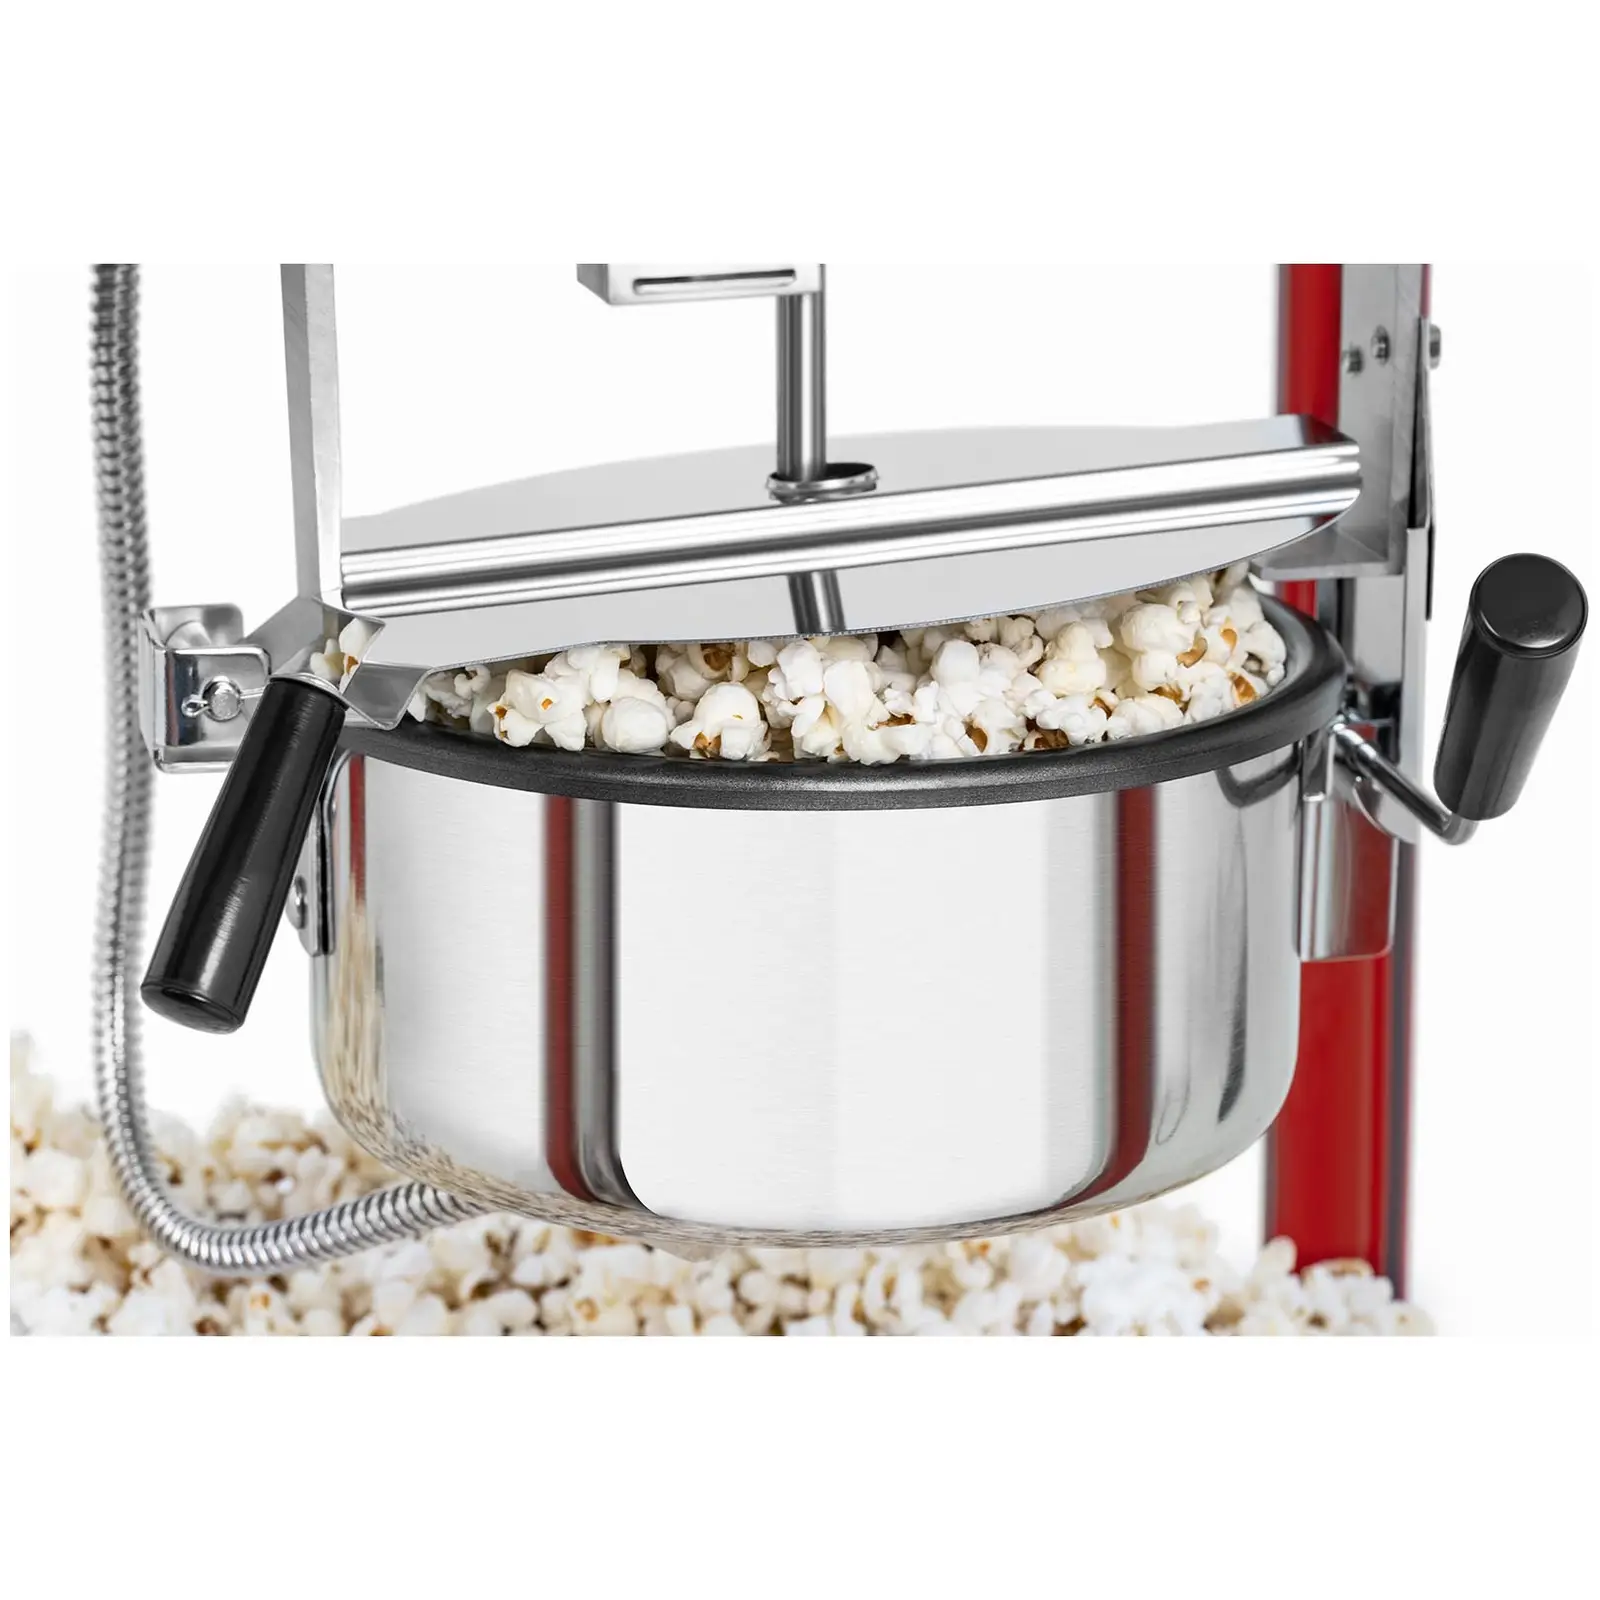 Macchina per popcorn piccola - Acciaio inossidabile rosso con vetro temperato e bollitore rivestito in teflon